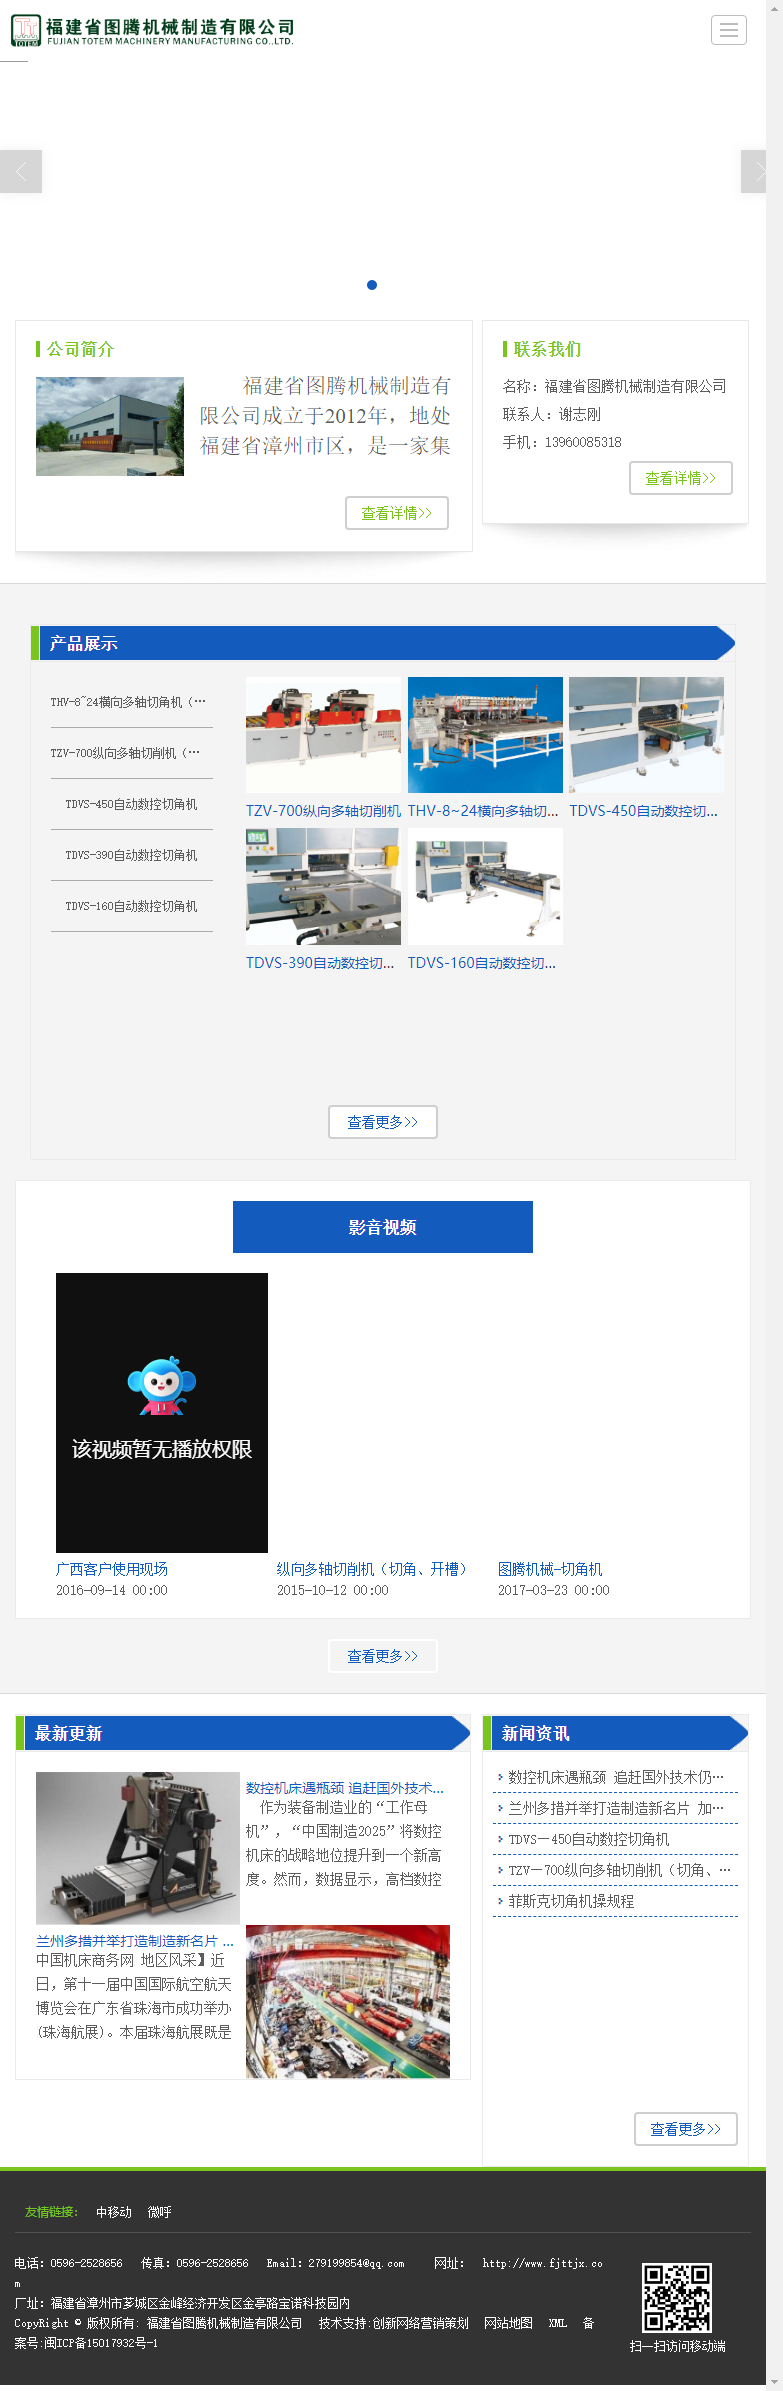 福建省图腾机械制造有限公司网站案例